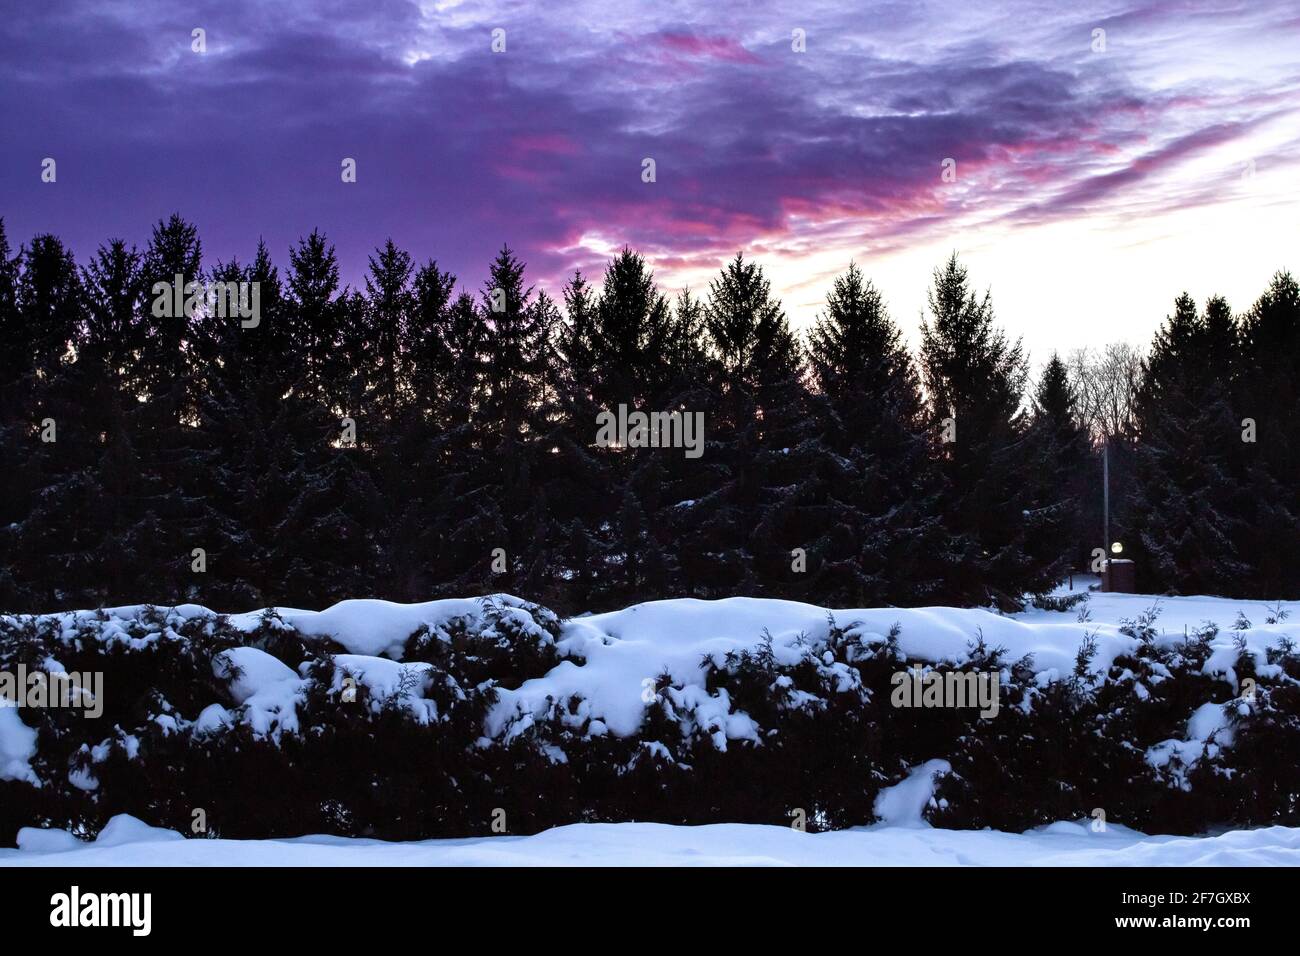 Dramatischer rosa und violetter Sonnenuntergang im Winter in London-Middlesex, Ontario, Kanada, mit einer großen Fichte und einer silhouettierten Baumgrenze, 2021. Stockfoto